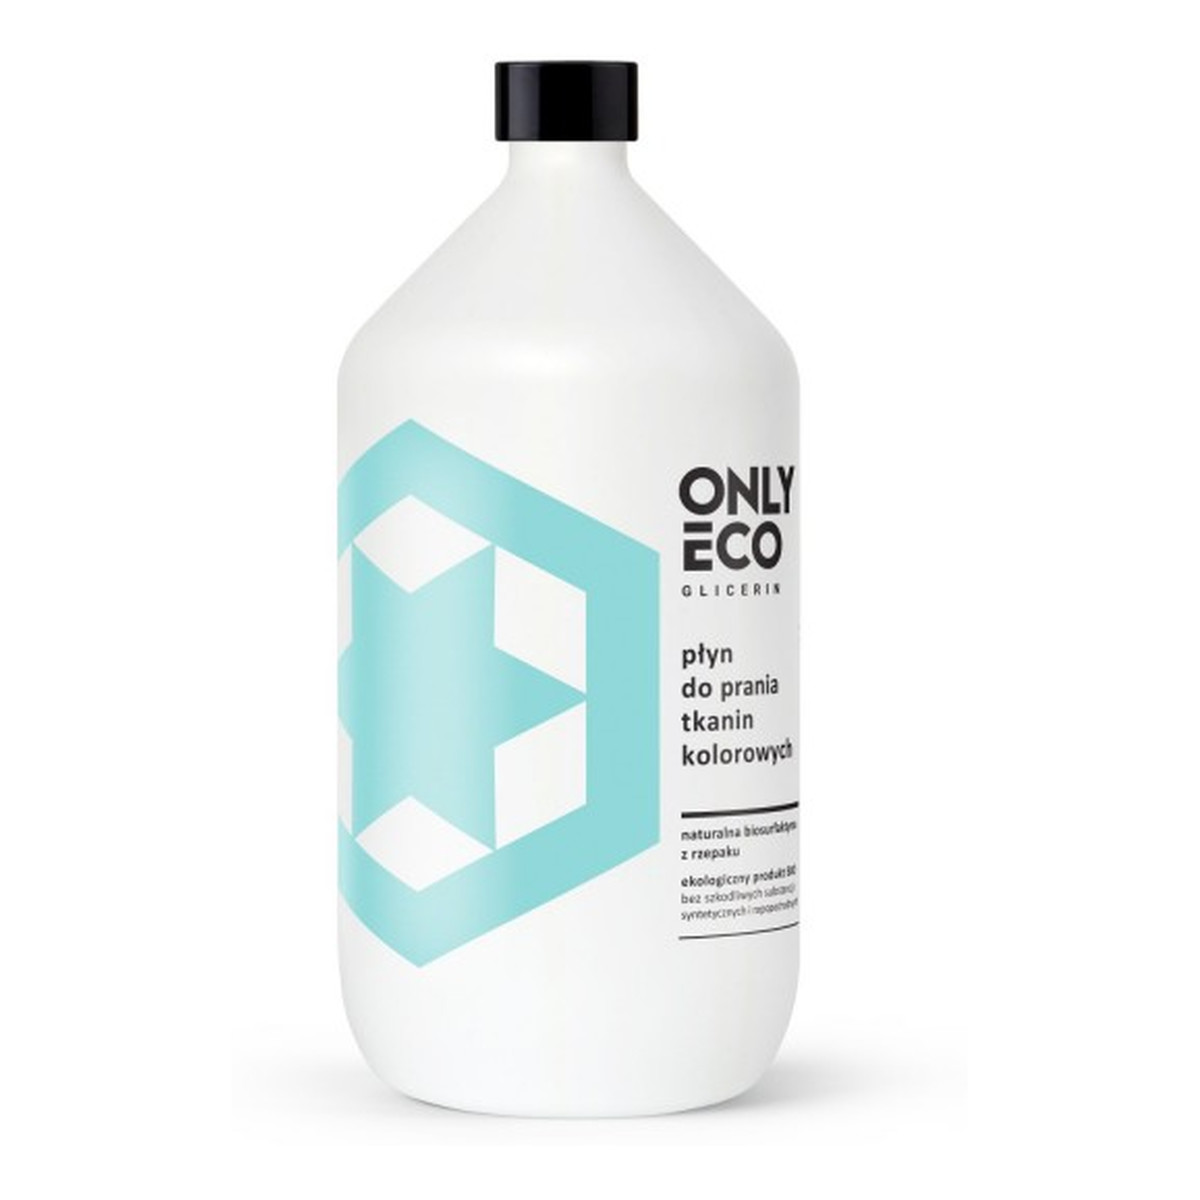 OnlyEco Glicerin ekologiczny płyn do prania tkanin kolorowych 1000ml